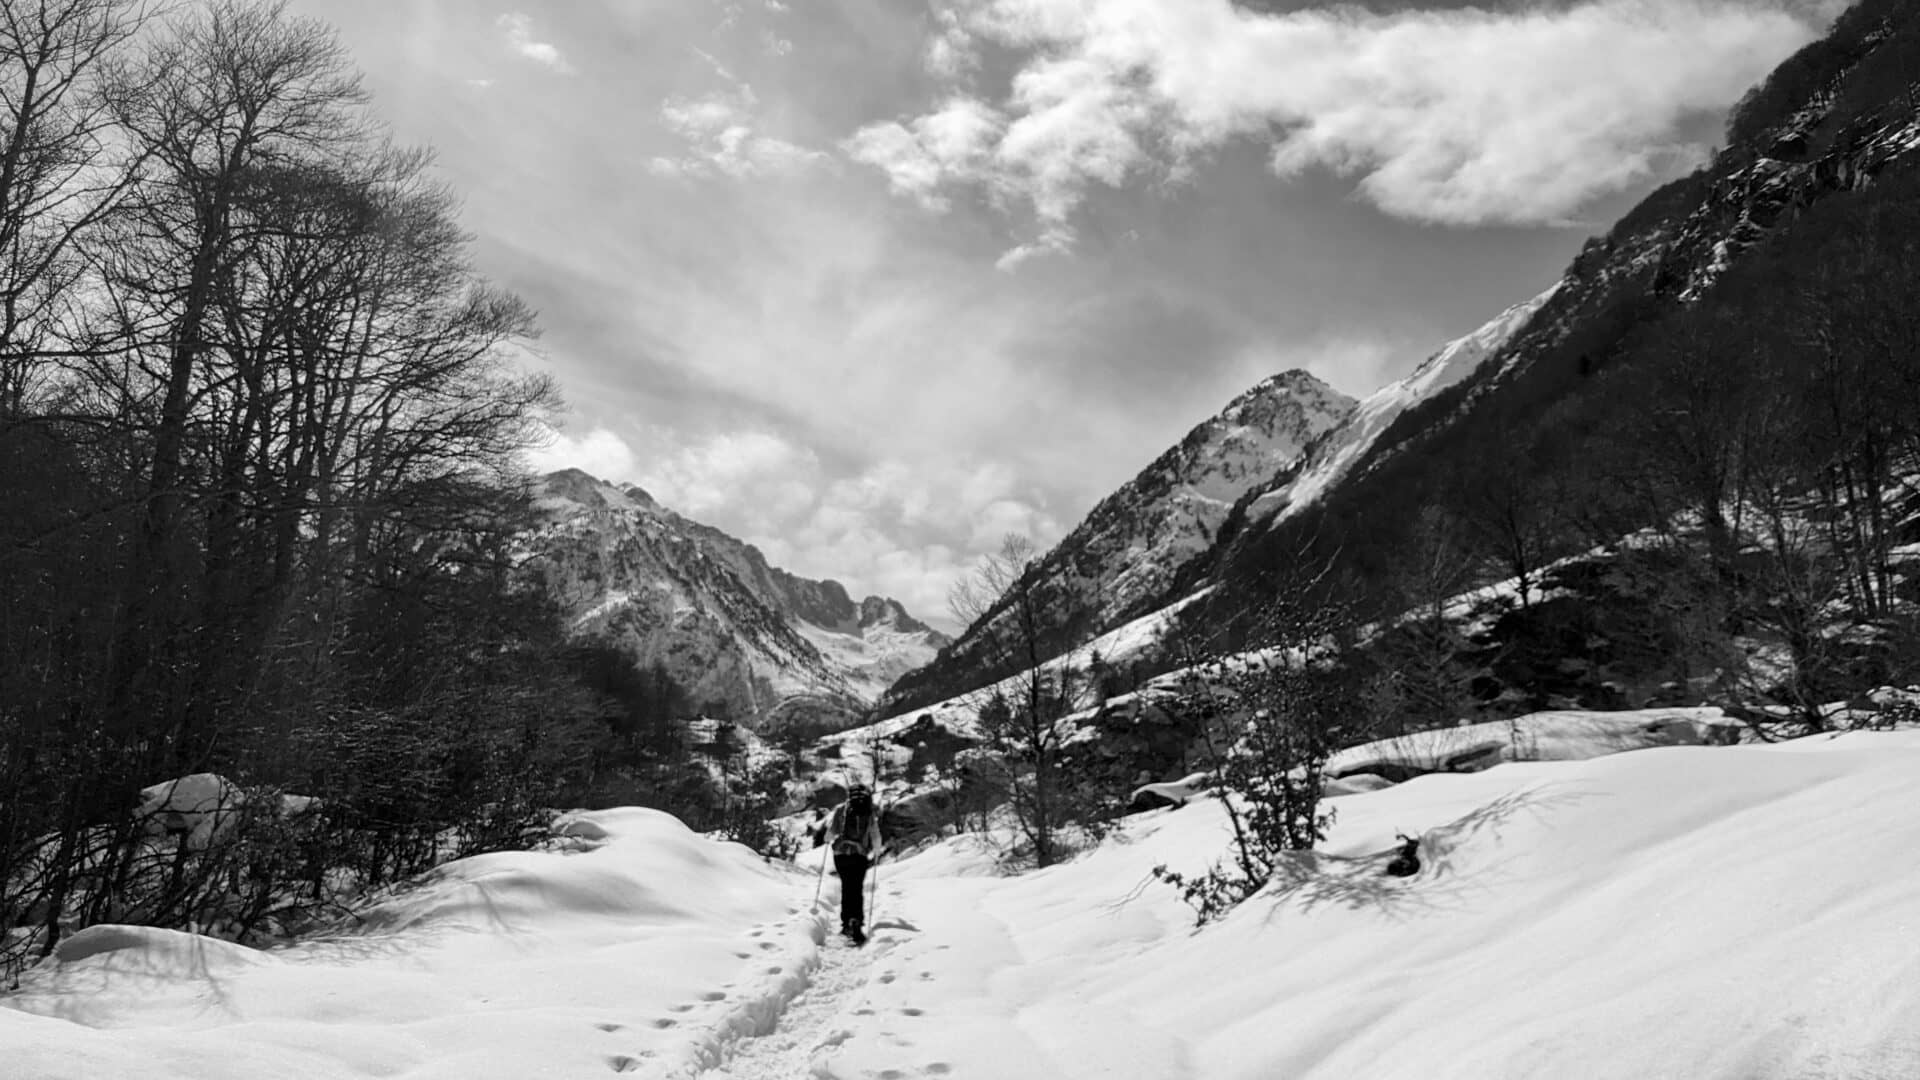 Randonnées en raquettes à neige dans la Vallée d'Orlu, en Ariège Pyrénées.